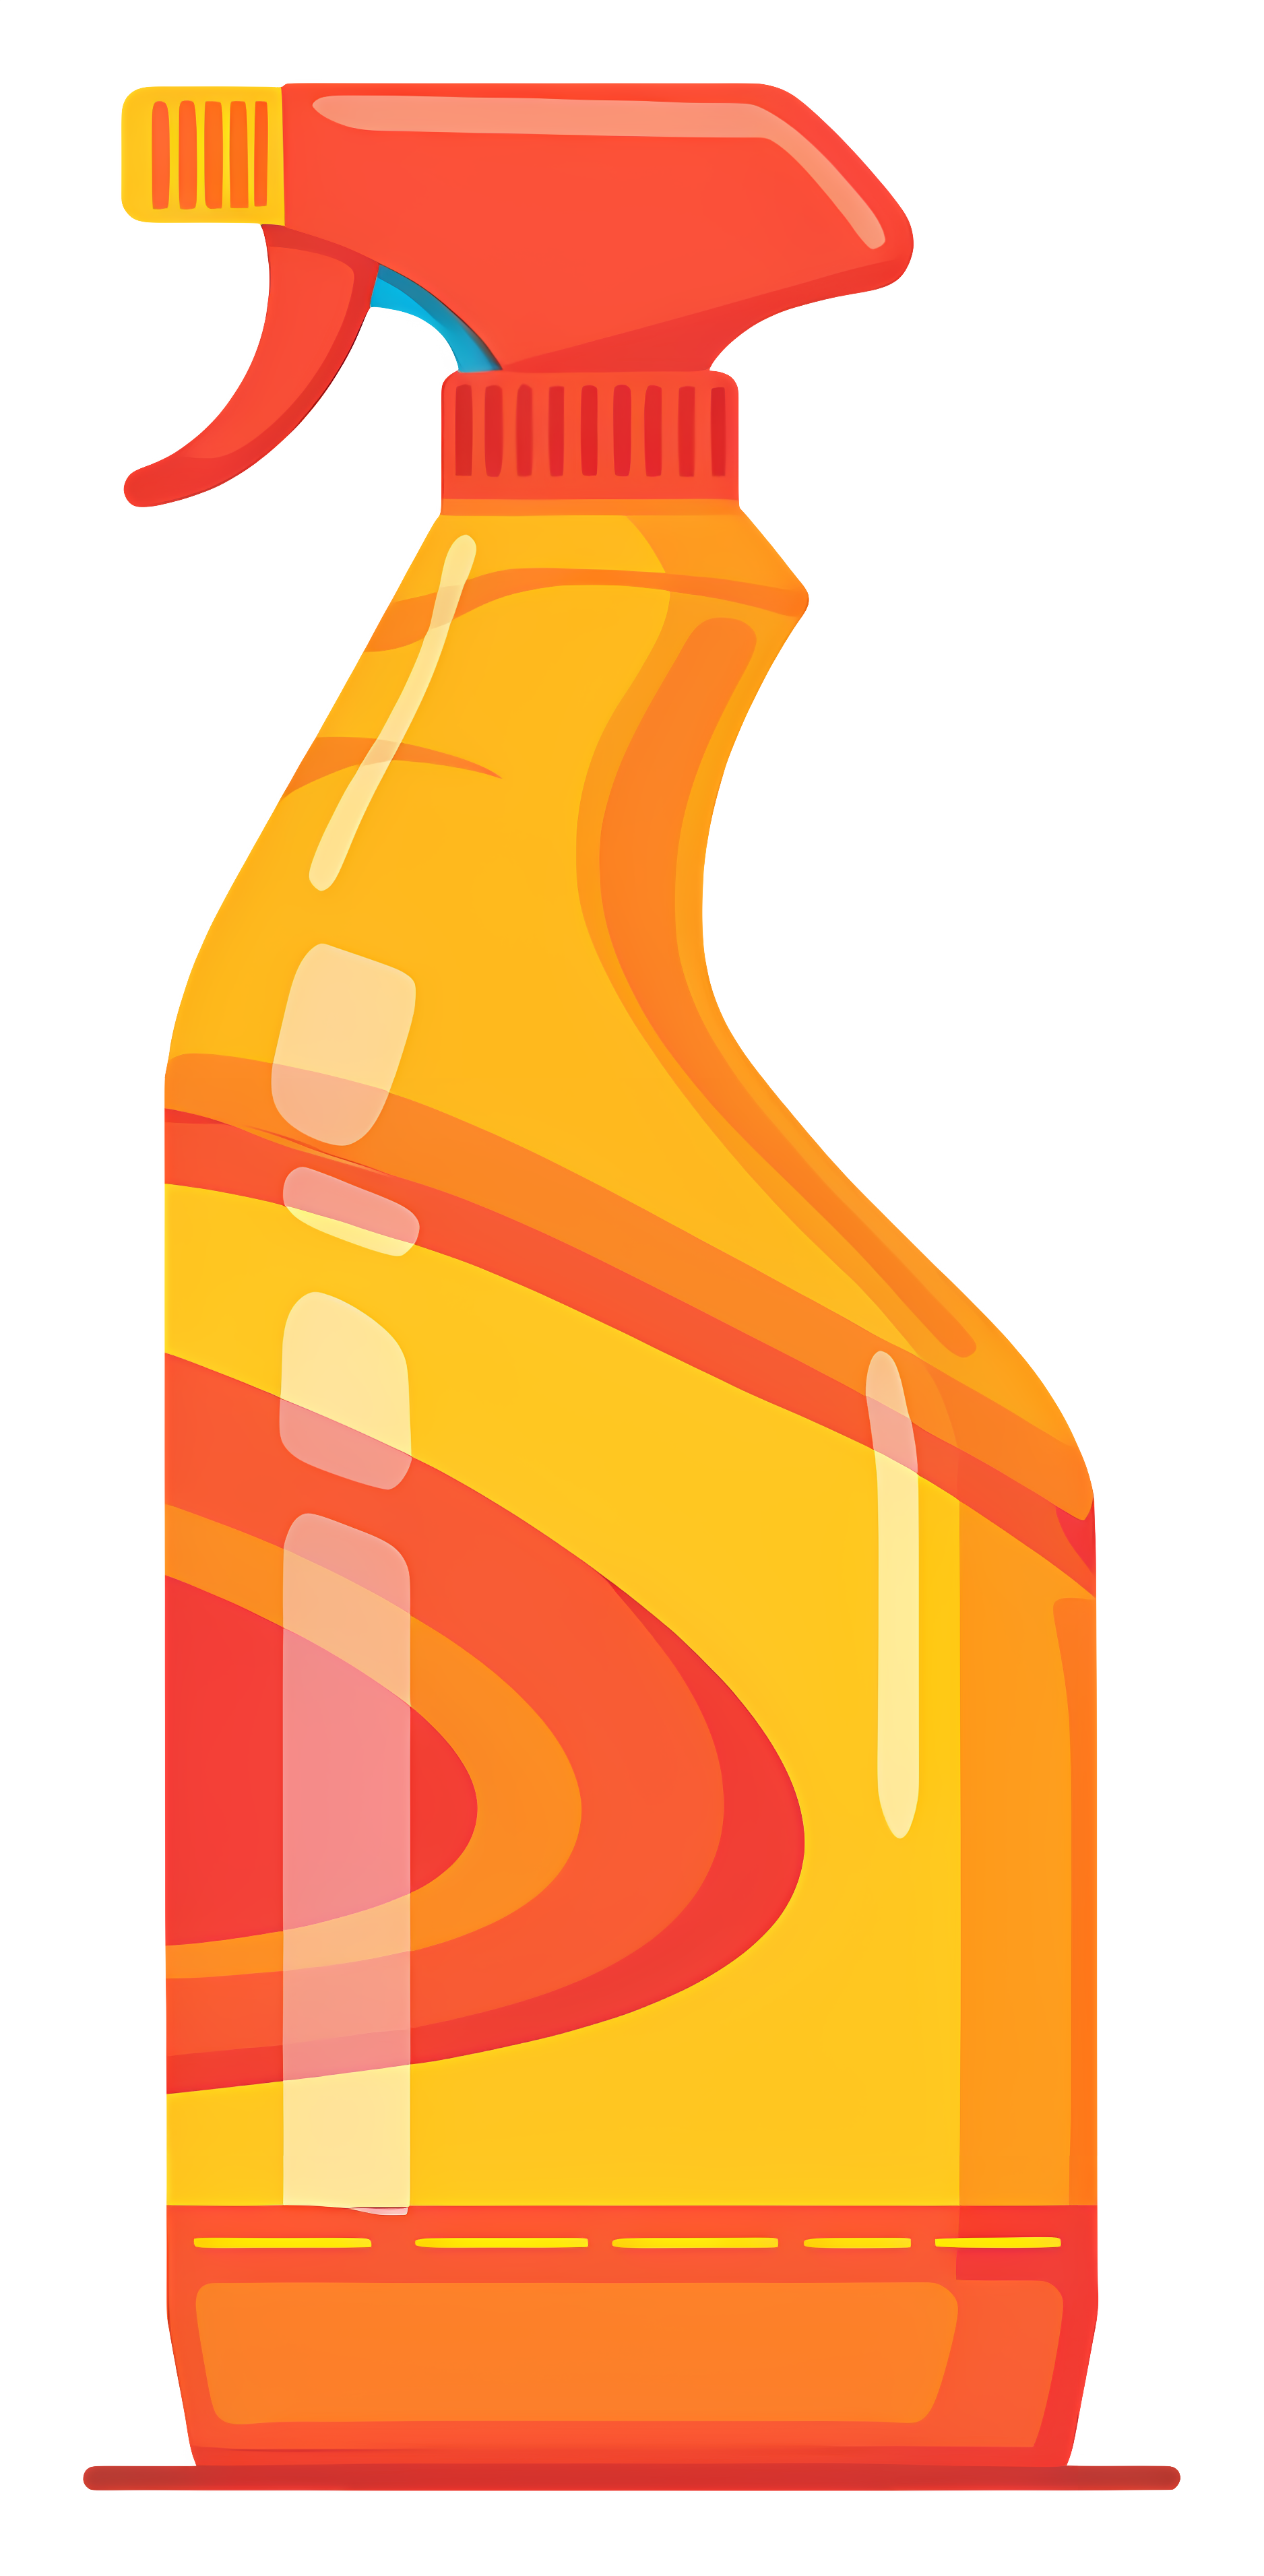 Translucent plastic bottle with orange cleaning liquid Clipart